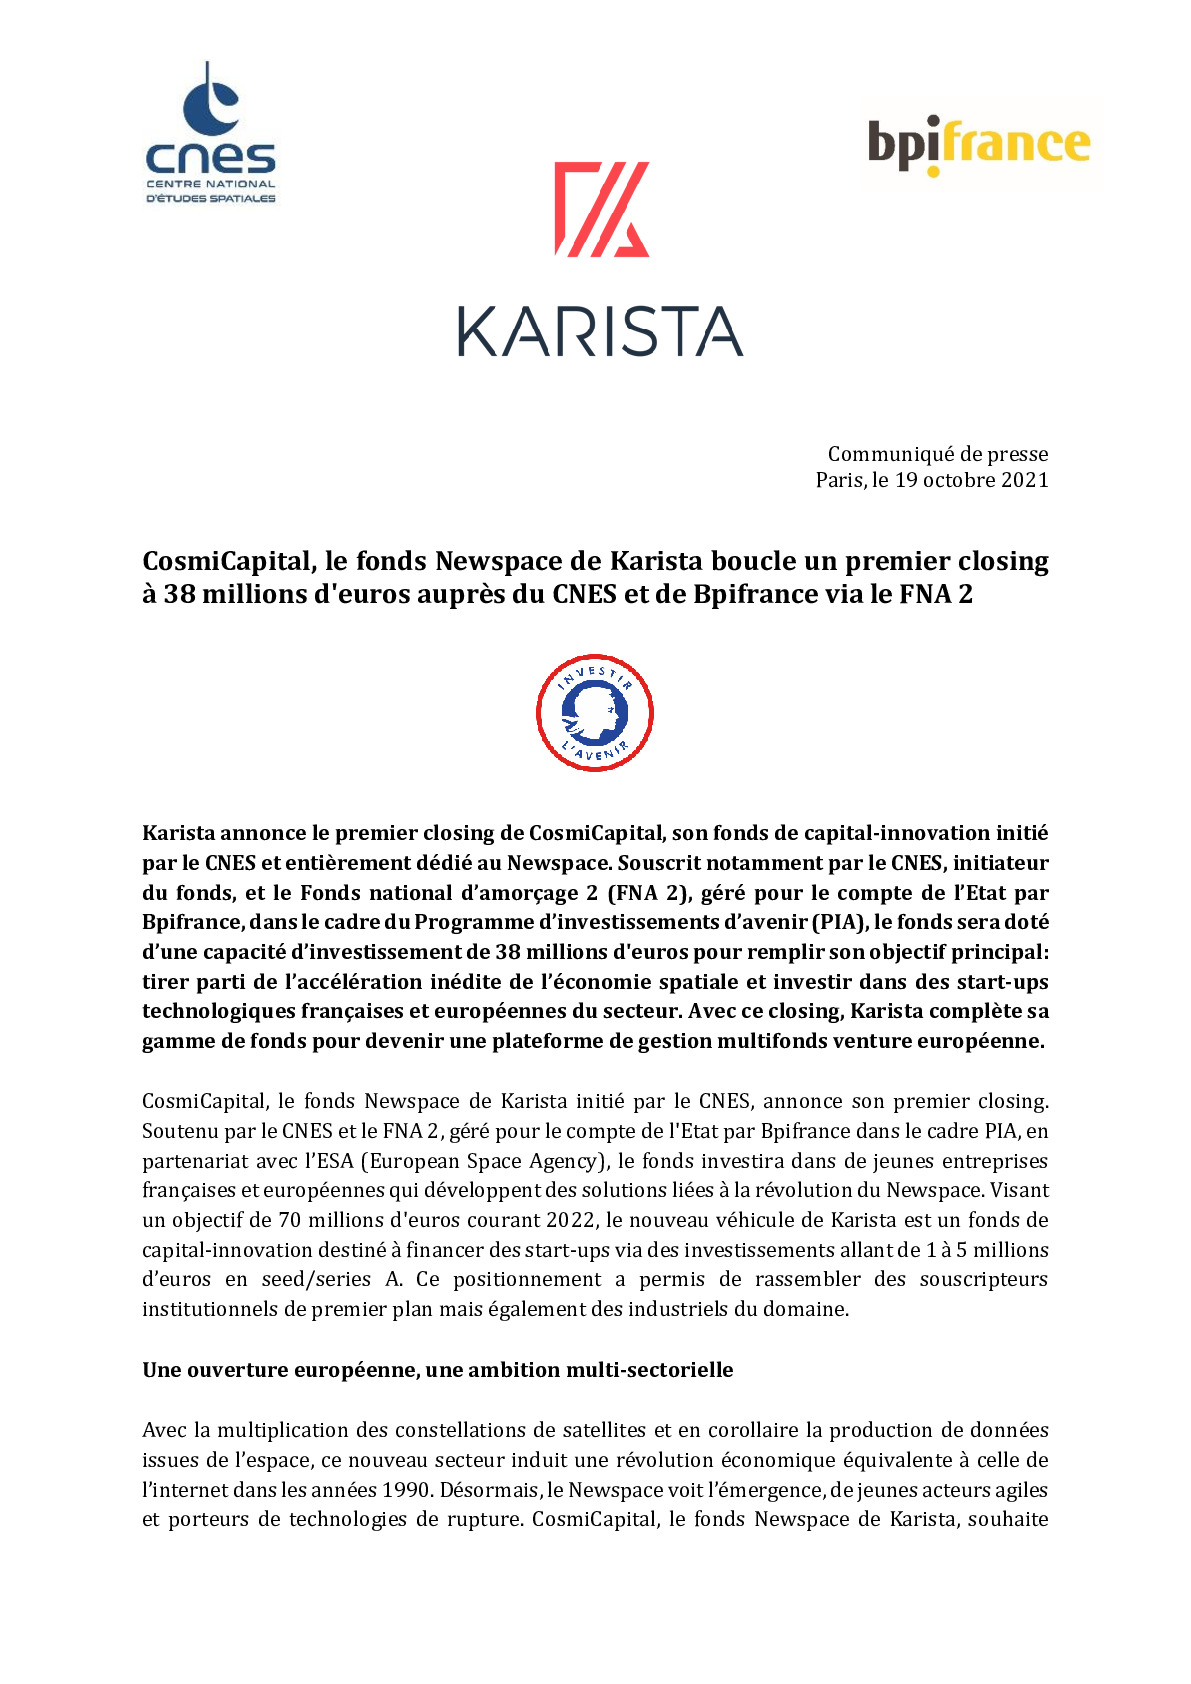 2021 10 19 – CP -CosmiCapital le fonds Newspace de Karista boucle un premier closing a 38 millions deuros aupres du CNES et de Bpifrance via le FNA 2 -pdf